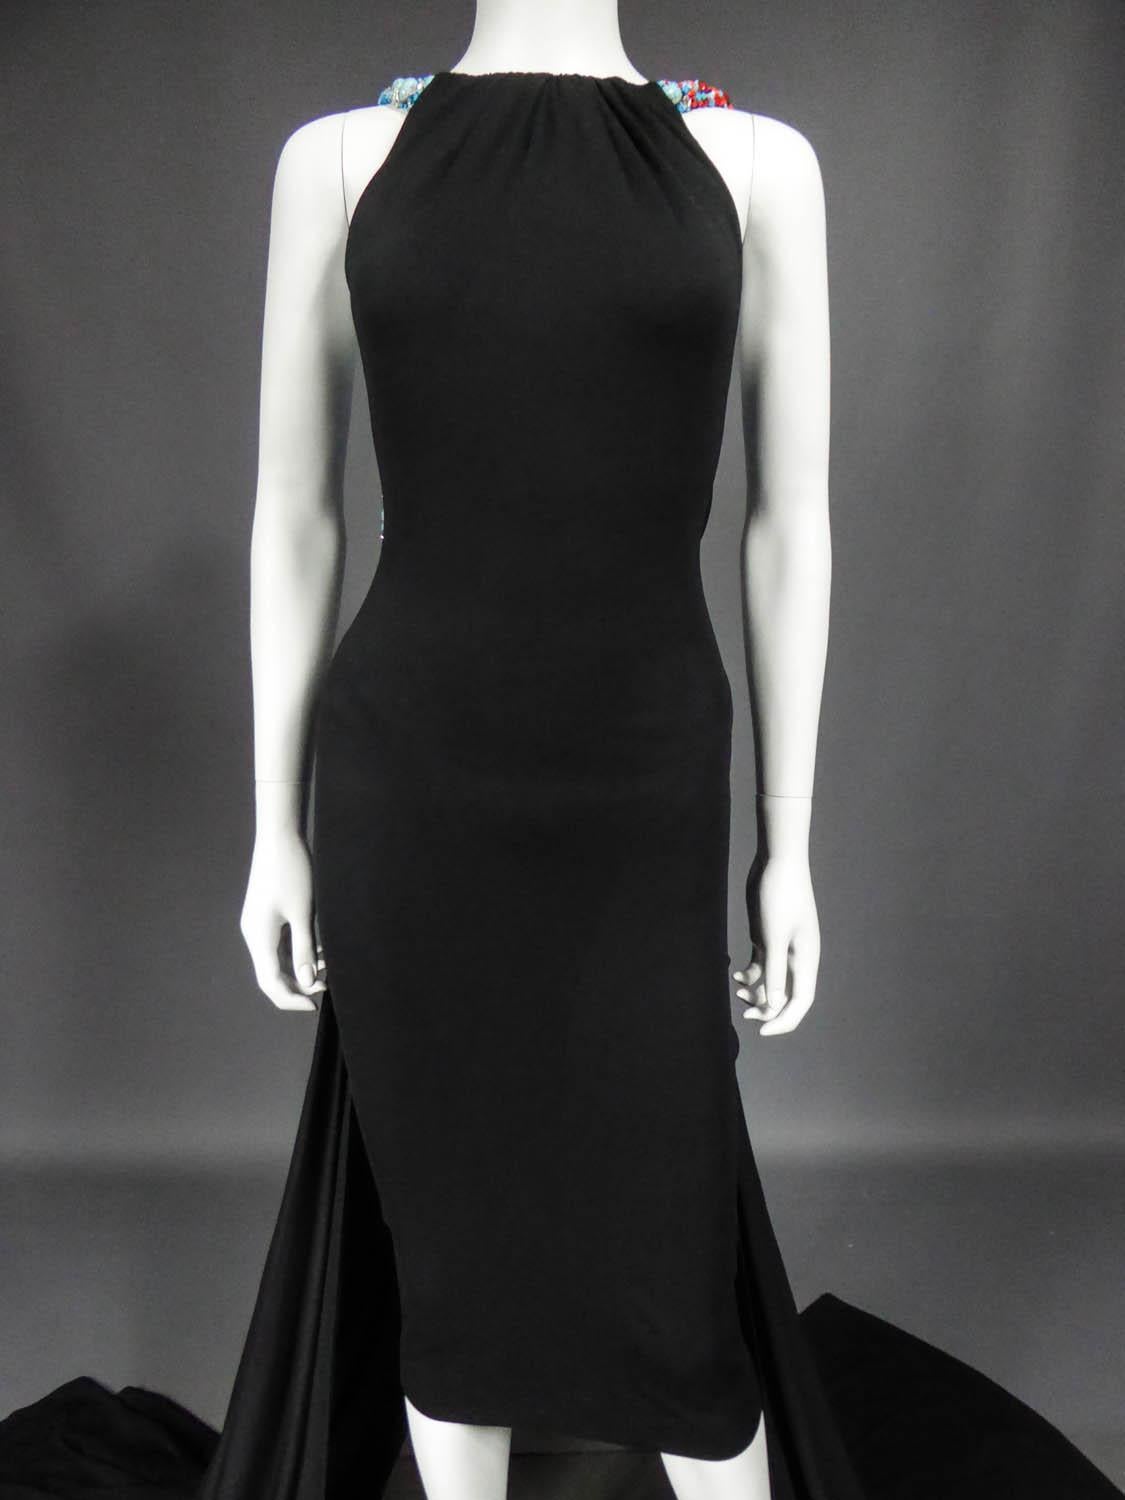 Black Jean-Louis Scherrer by Stéphane Rolland Couture Catwalk Dress - Spring 2001